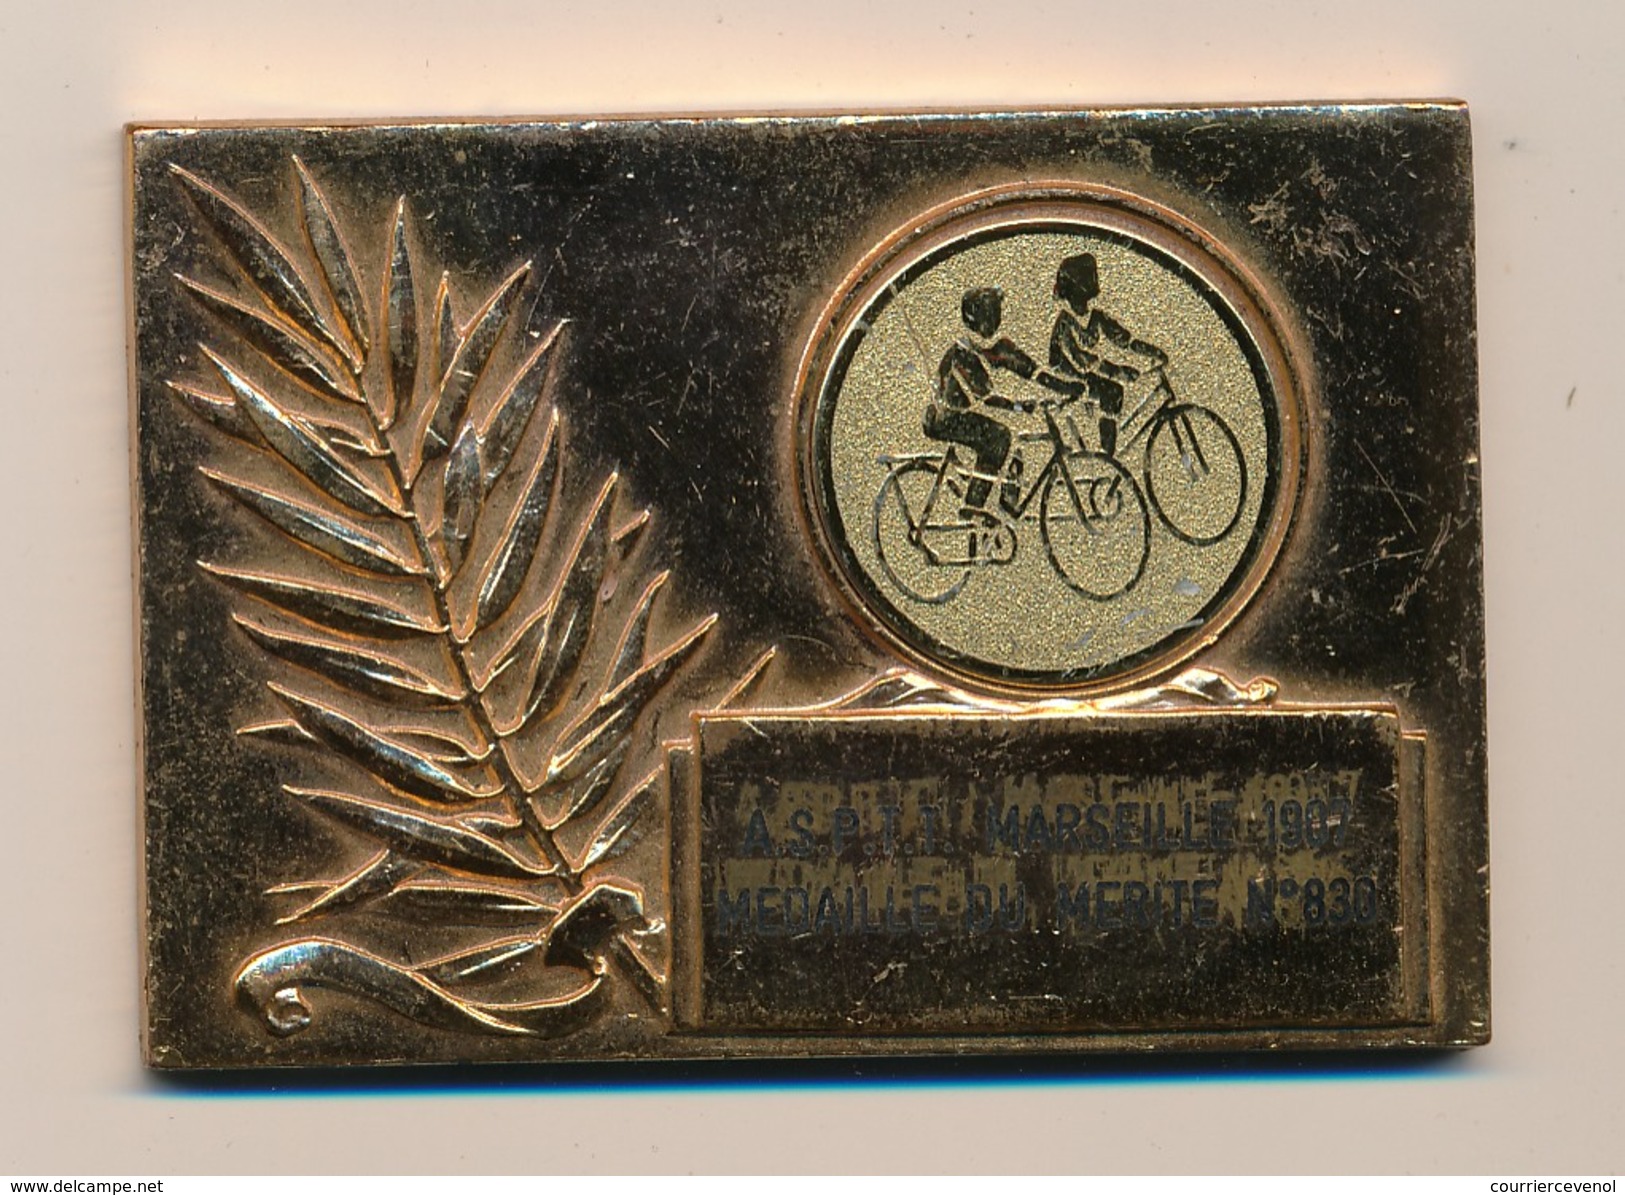 Plaque Métal Doré - ASPTT MARSEILLE 1907 Médaille Du Mérite - Daniel Deslandes 1982 / 1991 - Cycling